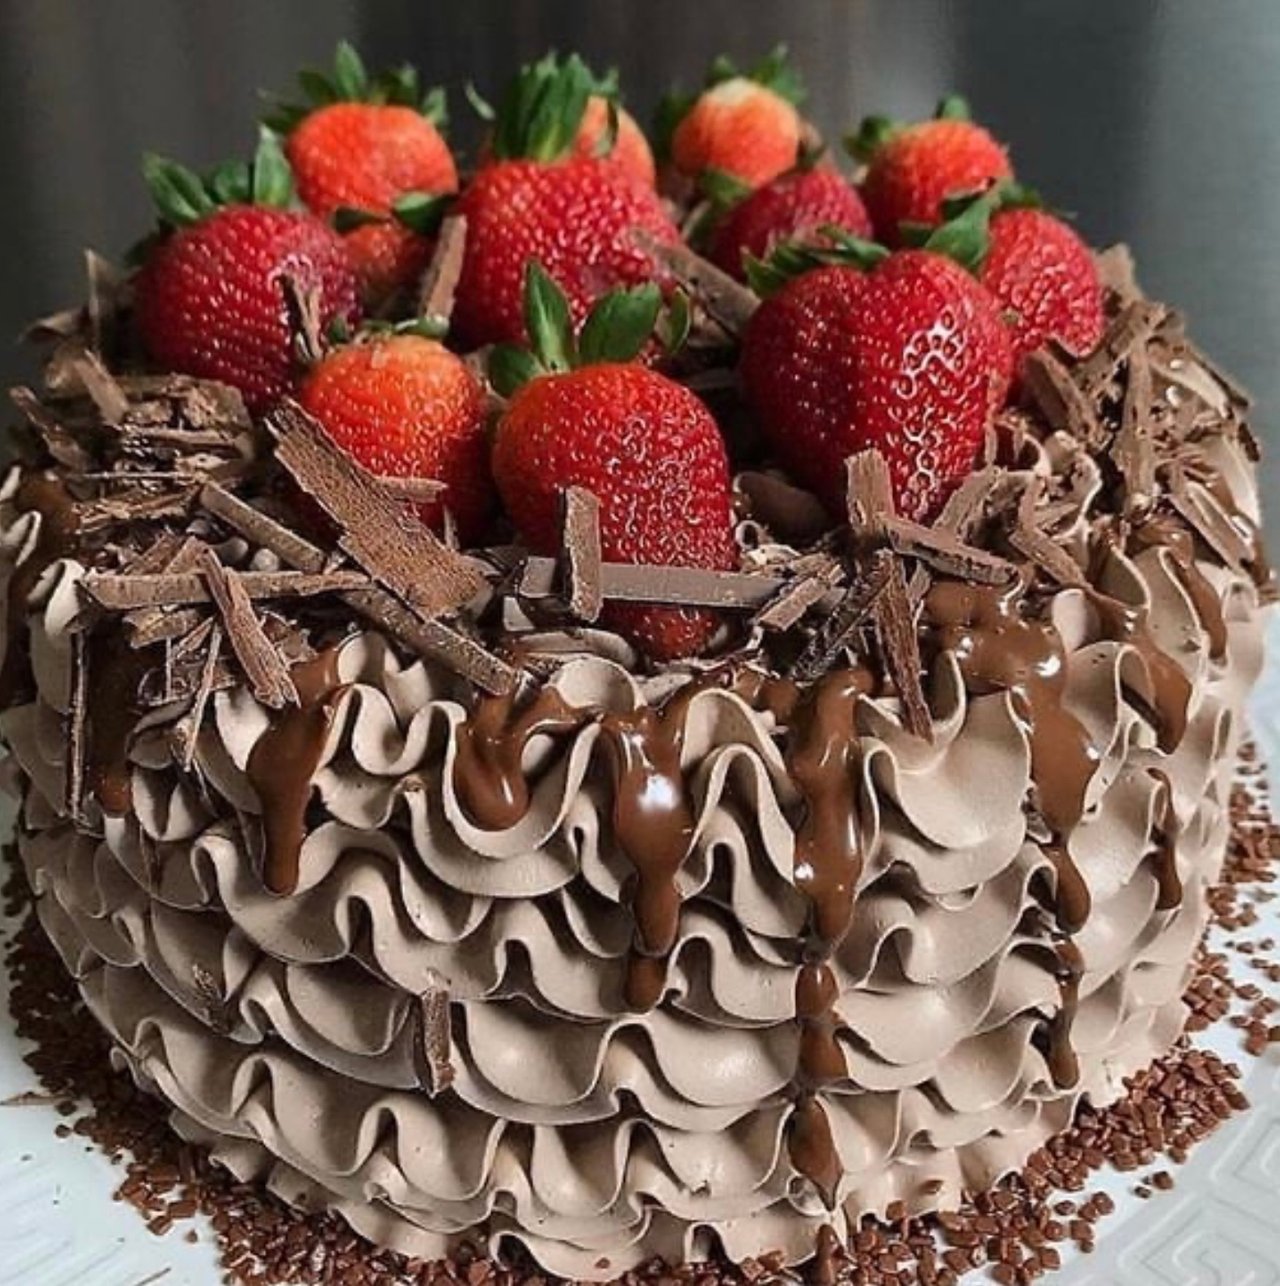 Strawberry Chocolate Cake Recipe | The Recipe Critic